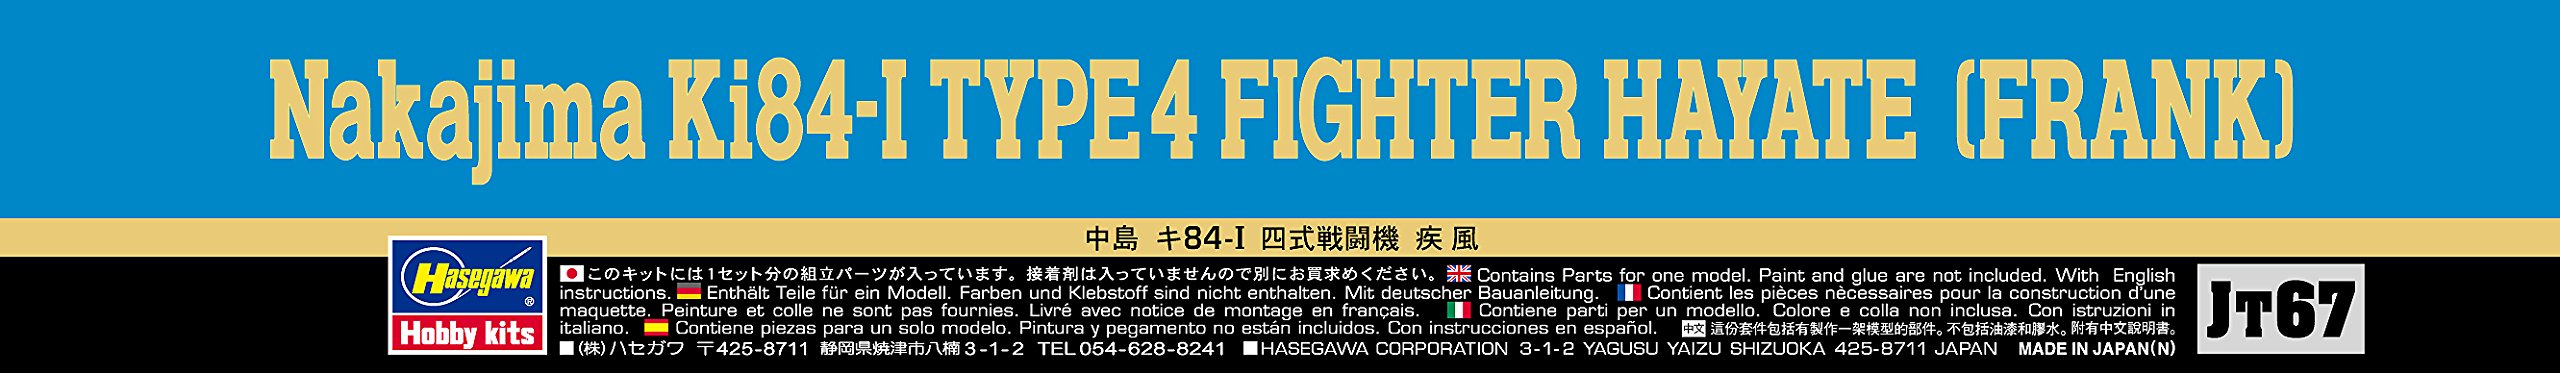 HASEGAWA 1/48 Nakajima Ki84-I Hayate Frank Plastic Model